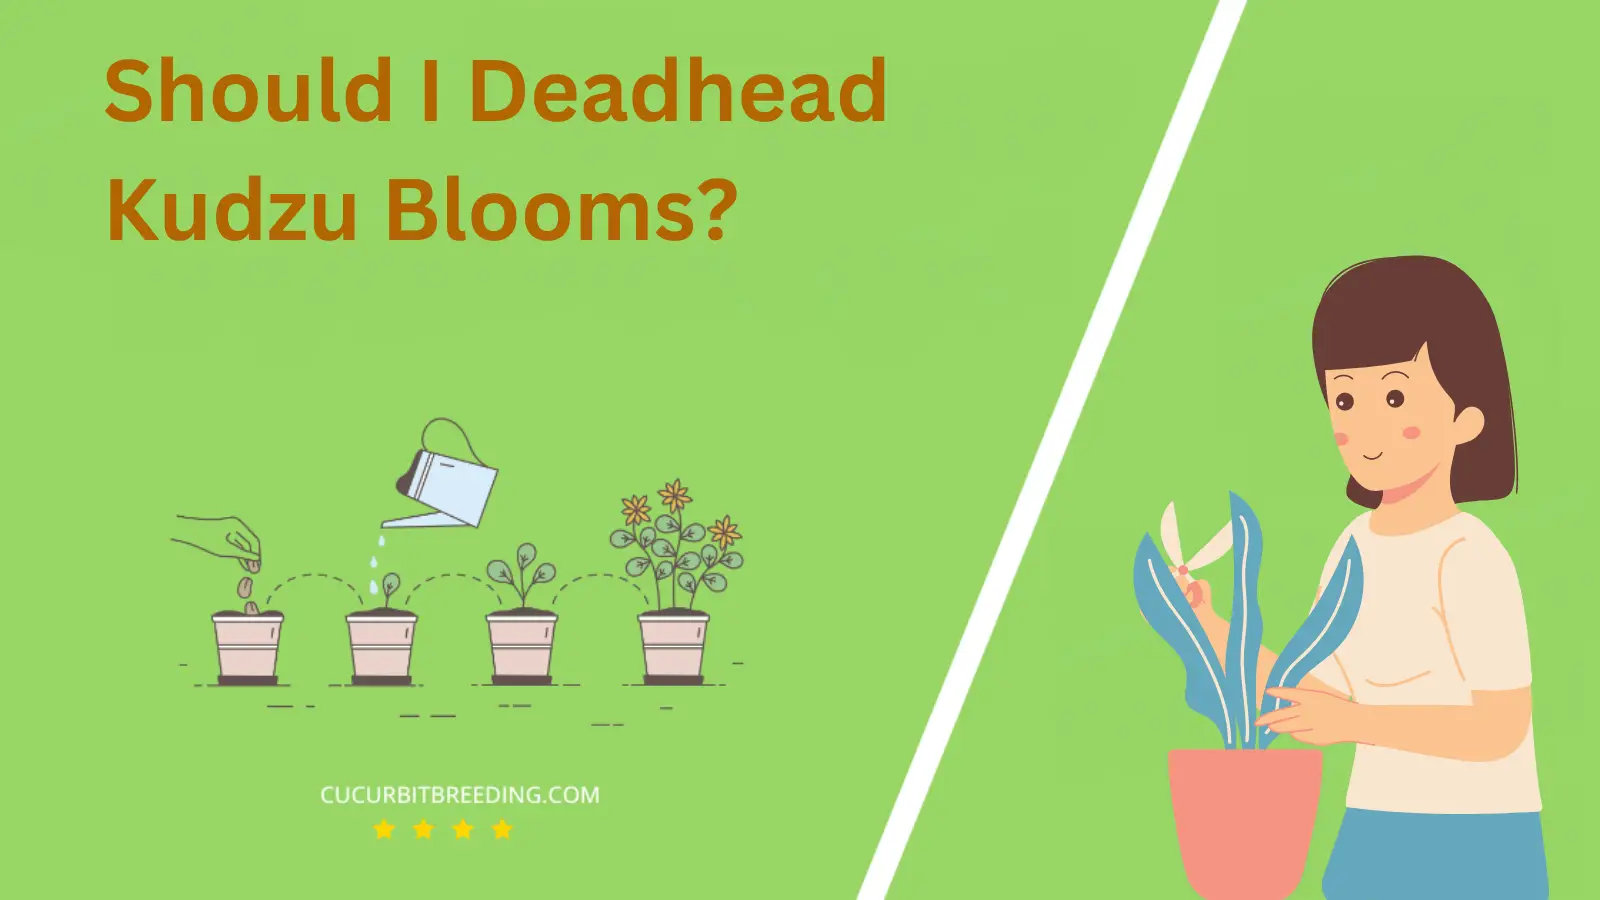 Should I Deadhead Kudzu Blooms?